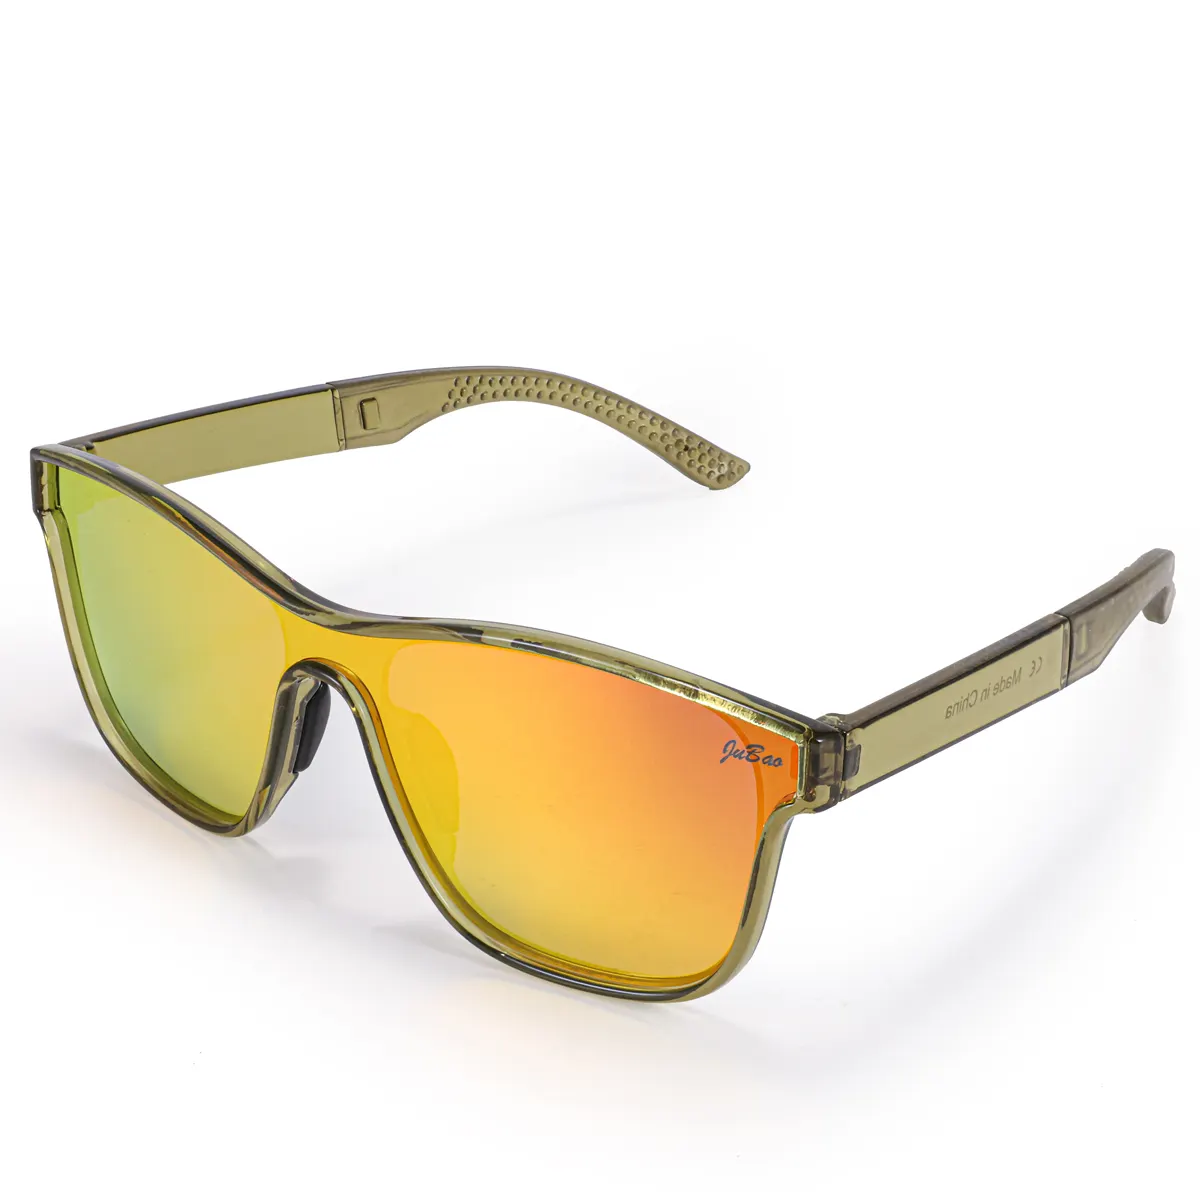 HUBO 508 lunettes de soleil de sport polarisées UV400 randonnée course pêche conduite vélo de route lunettes rockbros lunettes de soleil pour hommes femmes